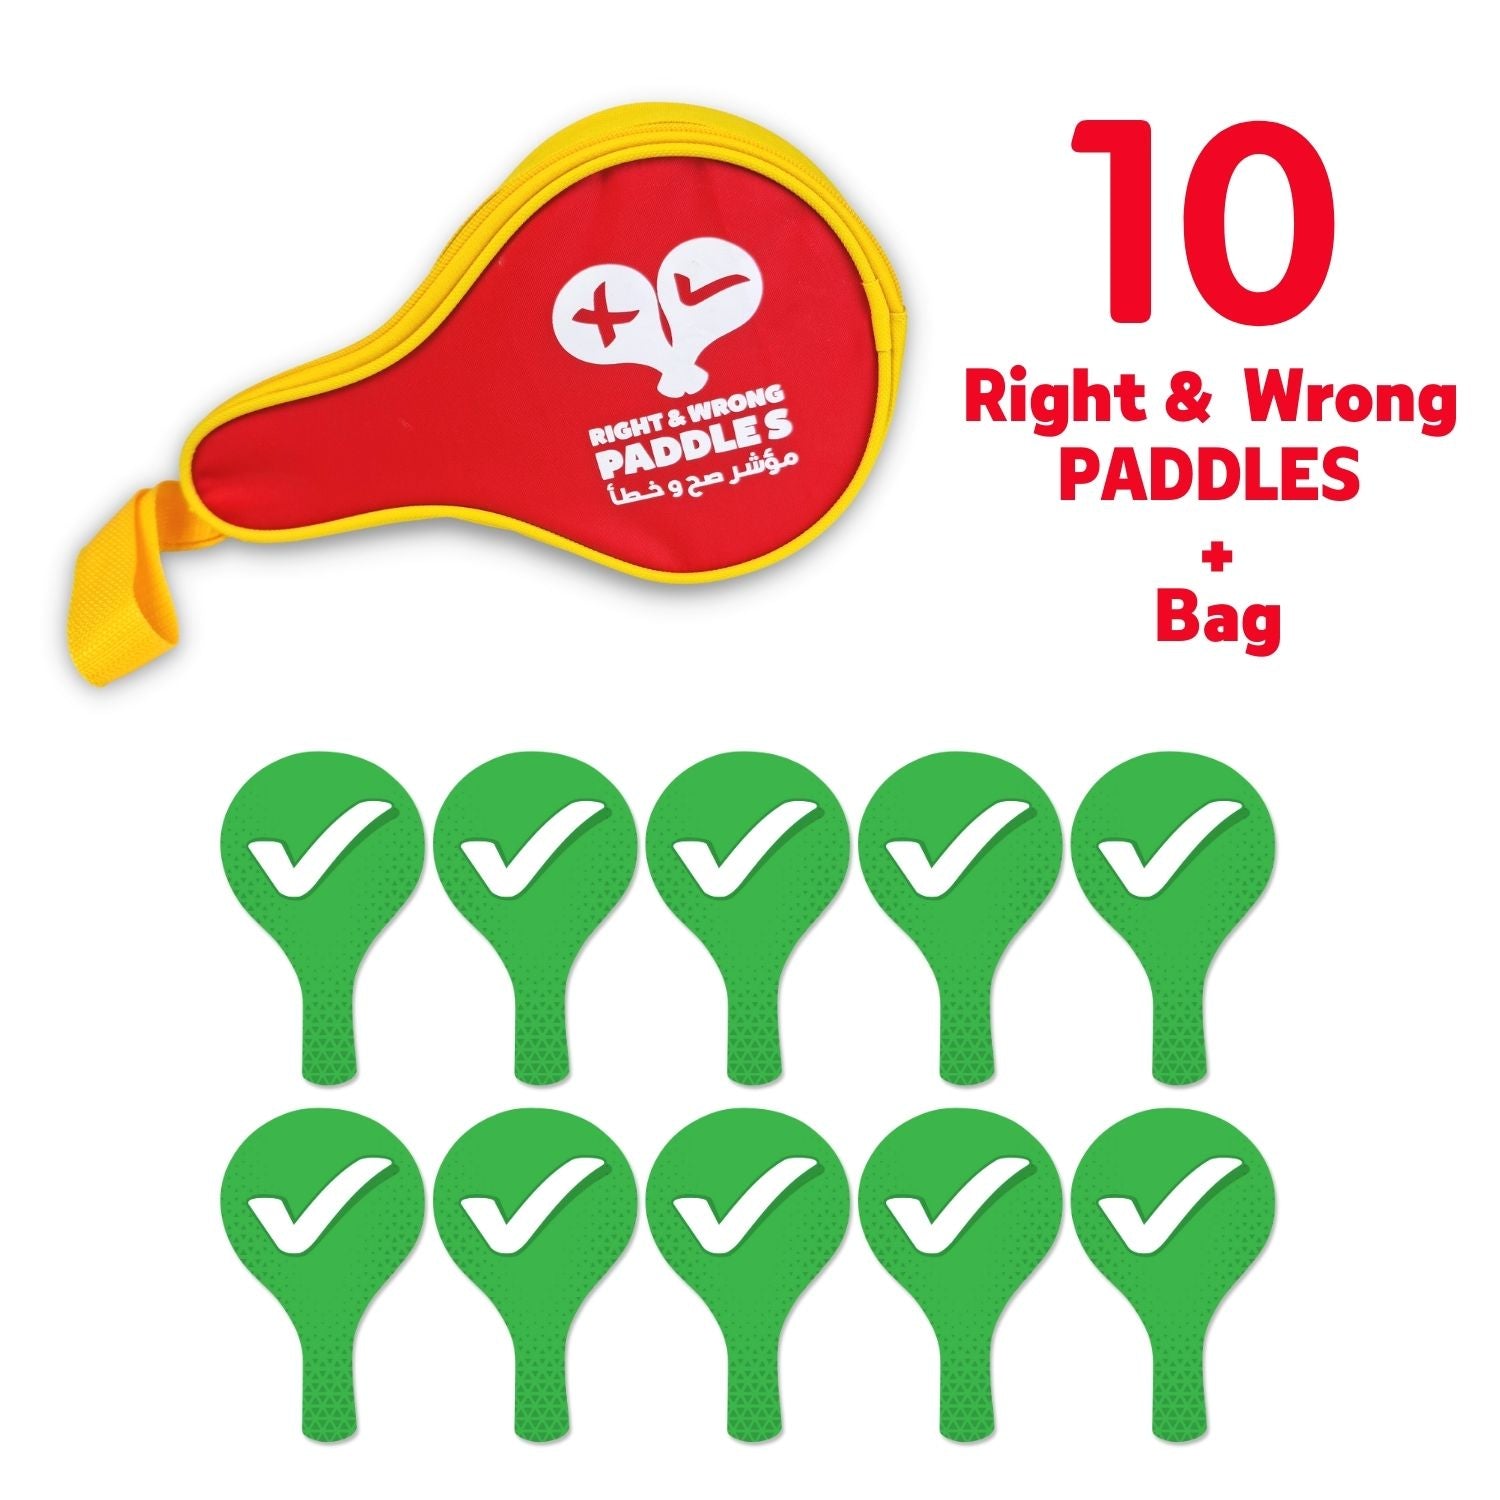 Right & Wrong Paddles - 10 Paddles